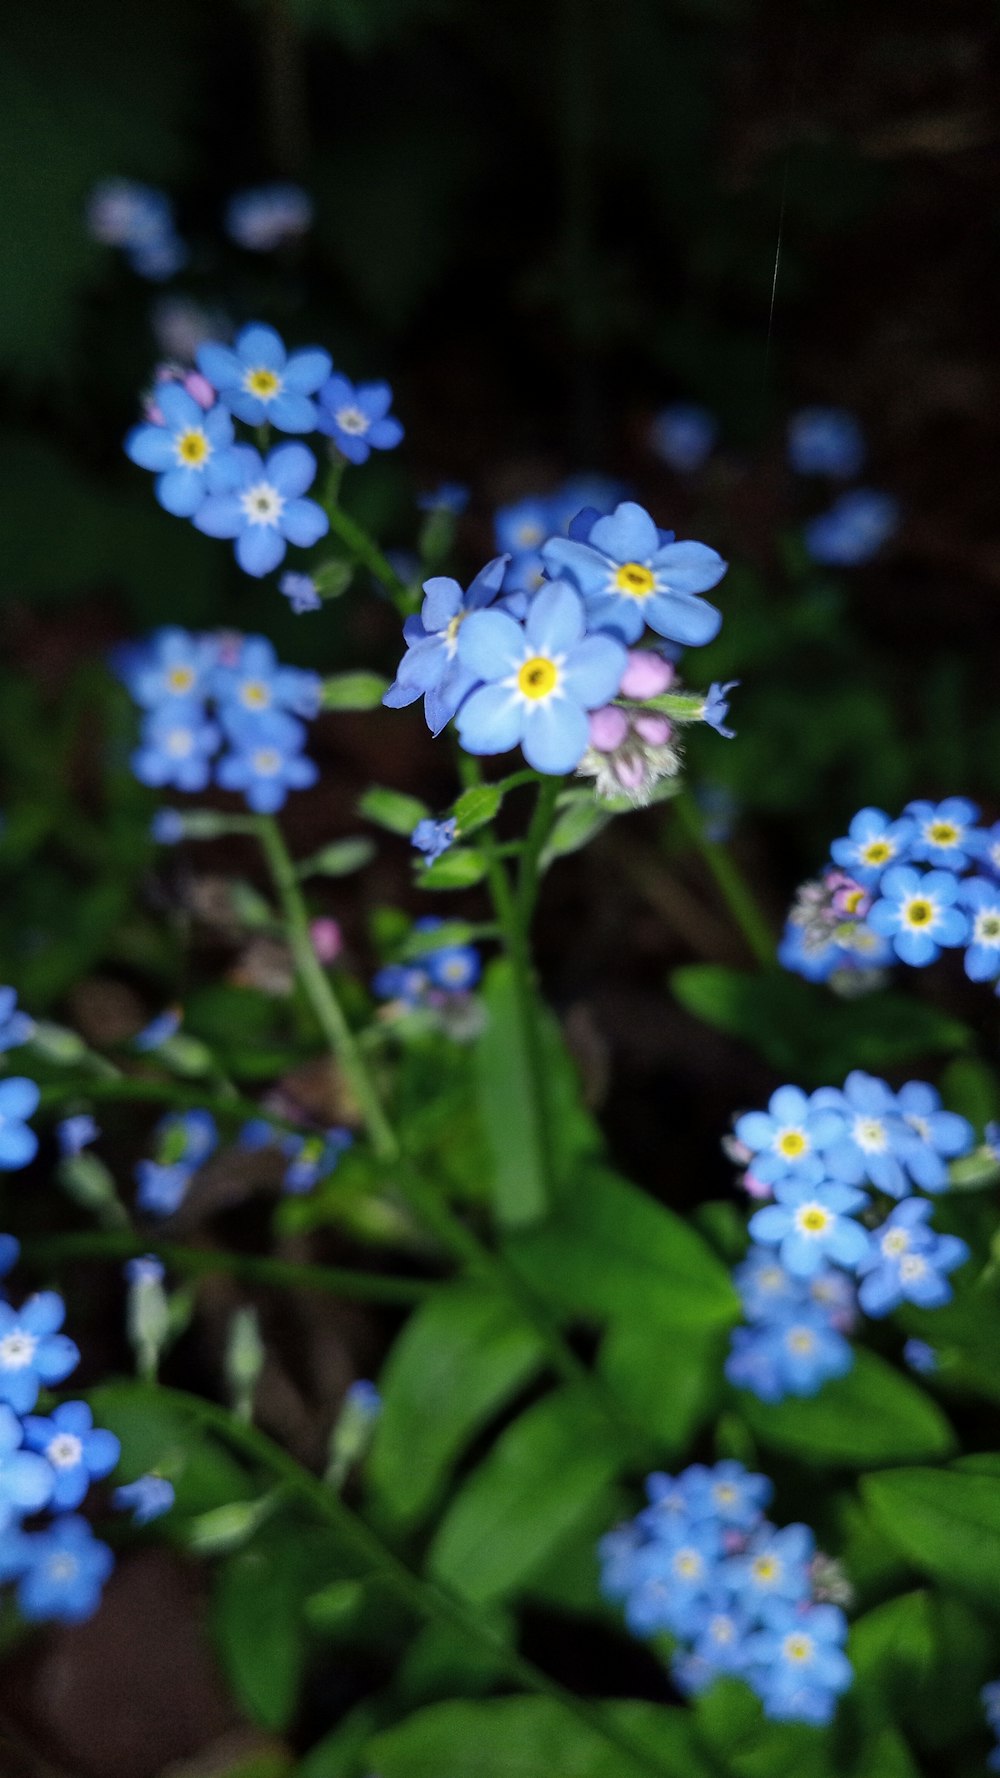 fiori blu e bianchi con lente tilt shift